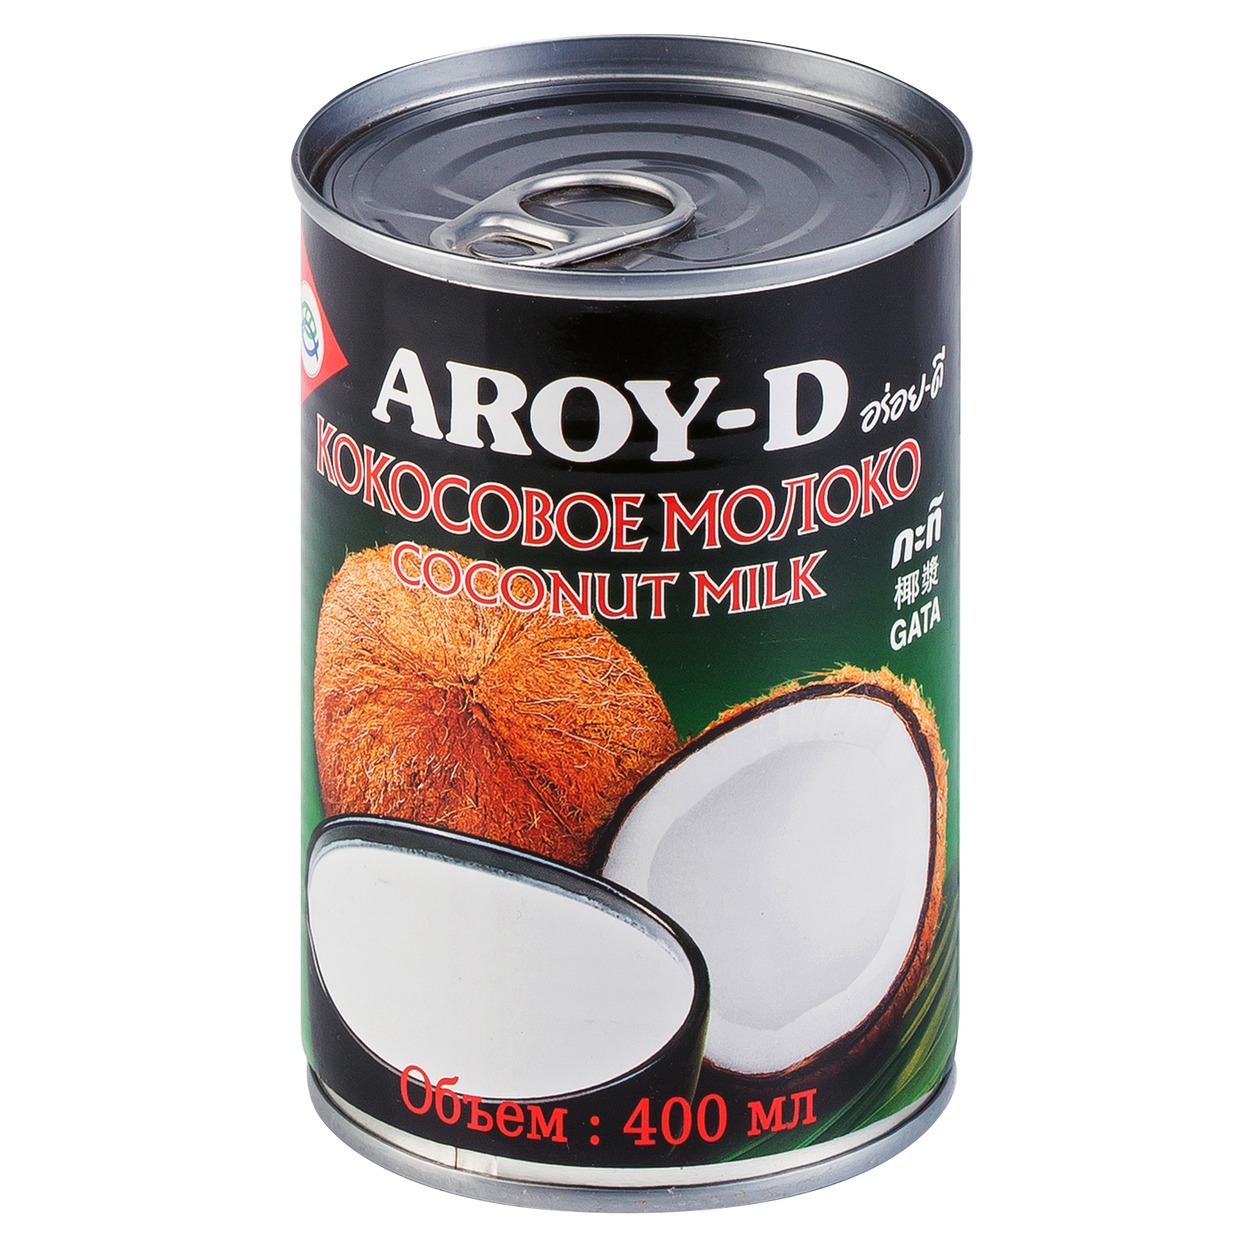 Кокосовое молоко переработанная мякоть кокосового ореха(жирность 17-19%) 400мл по акции в Пятерочке